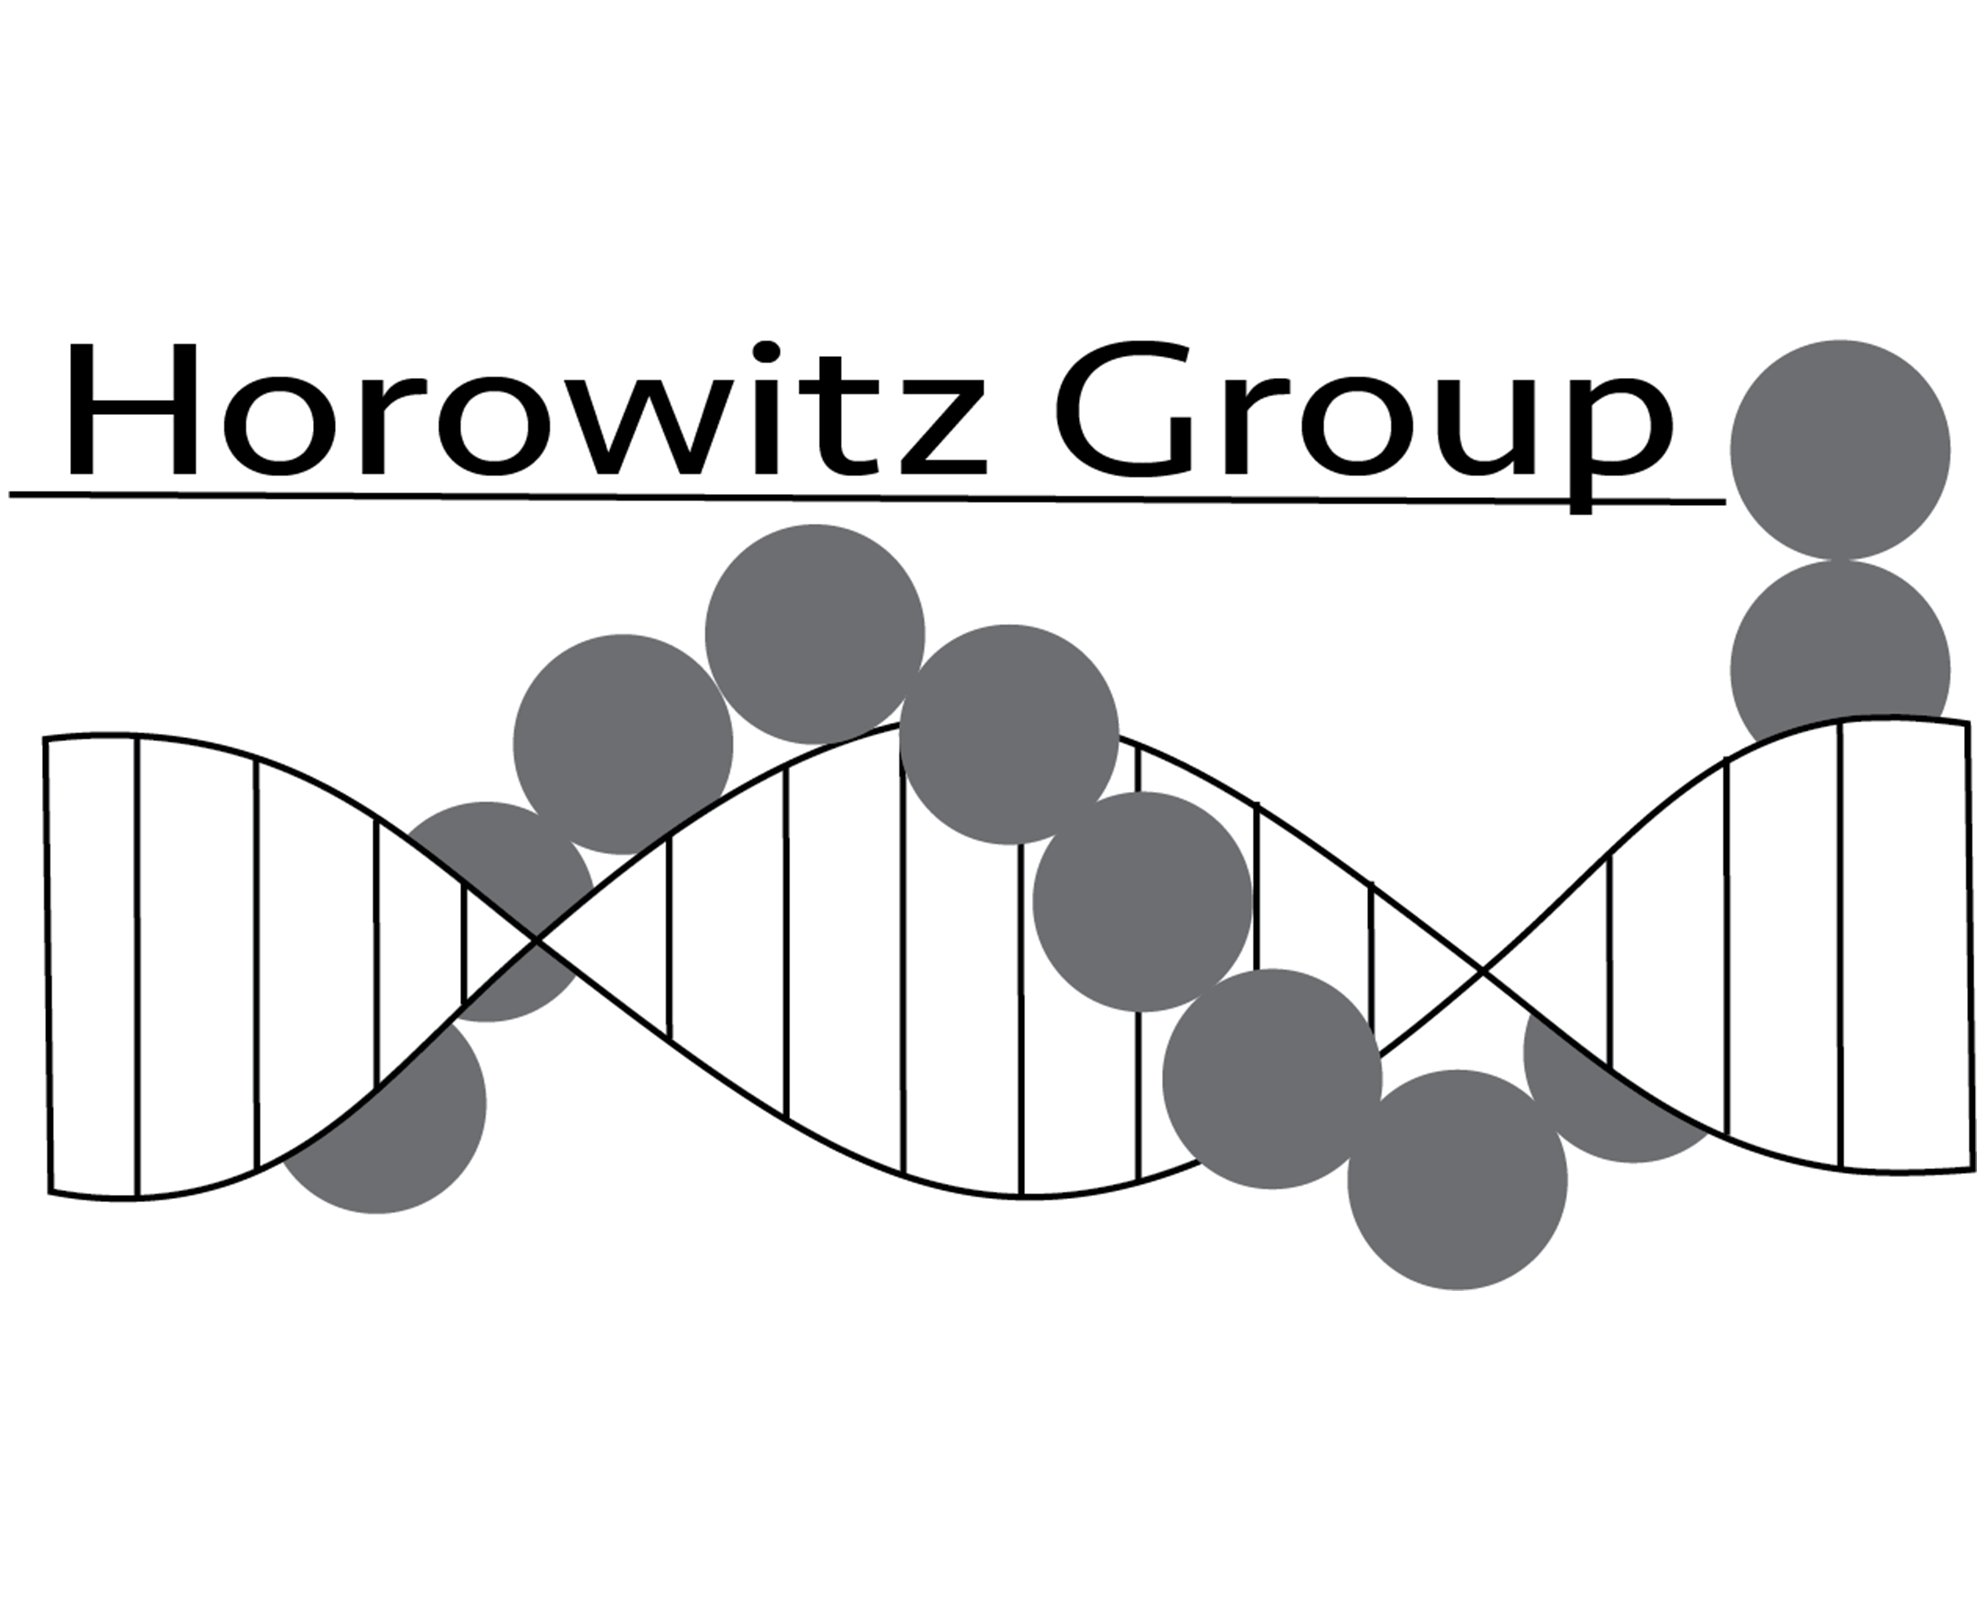 Horowitz Group logo